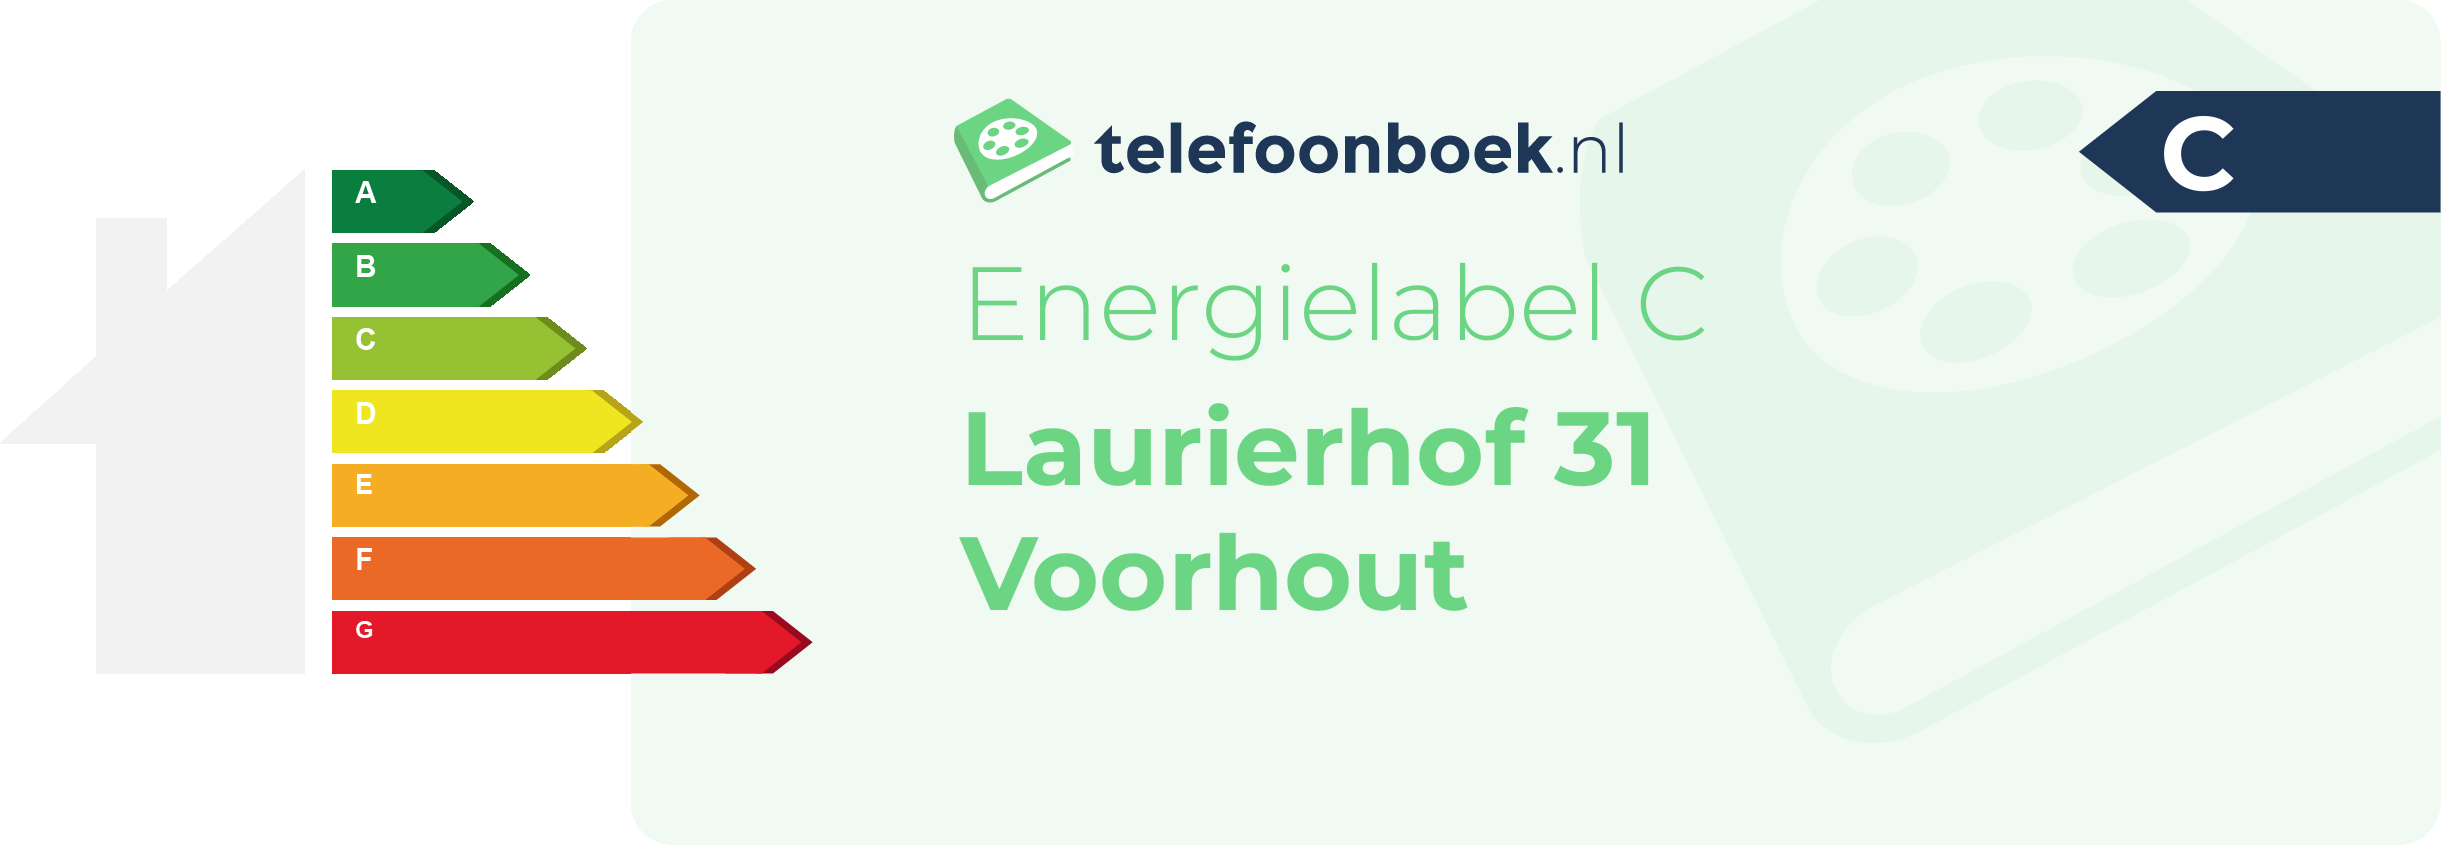 Energielabel Laurierhof 31 Voorhout